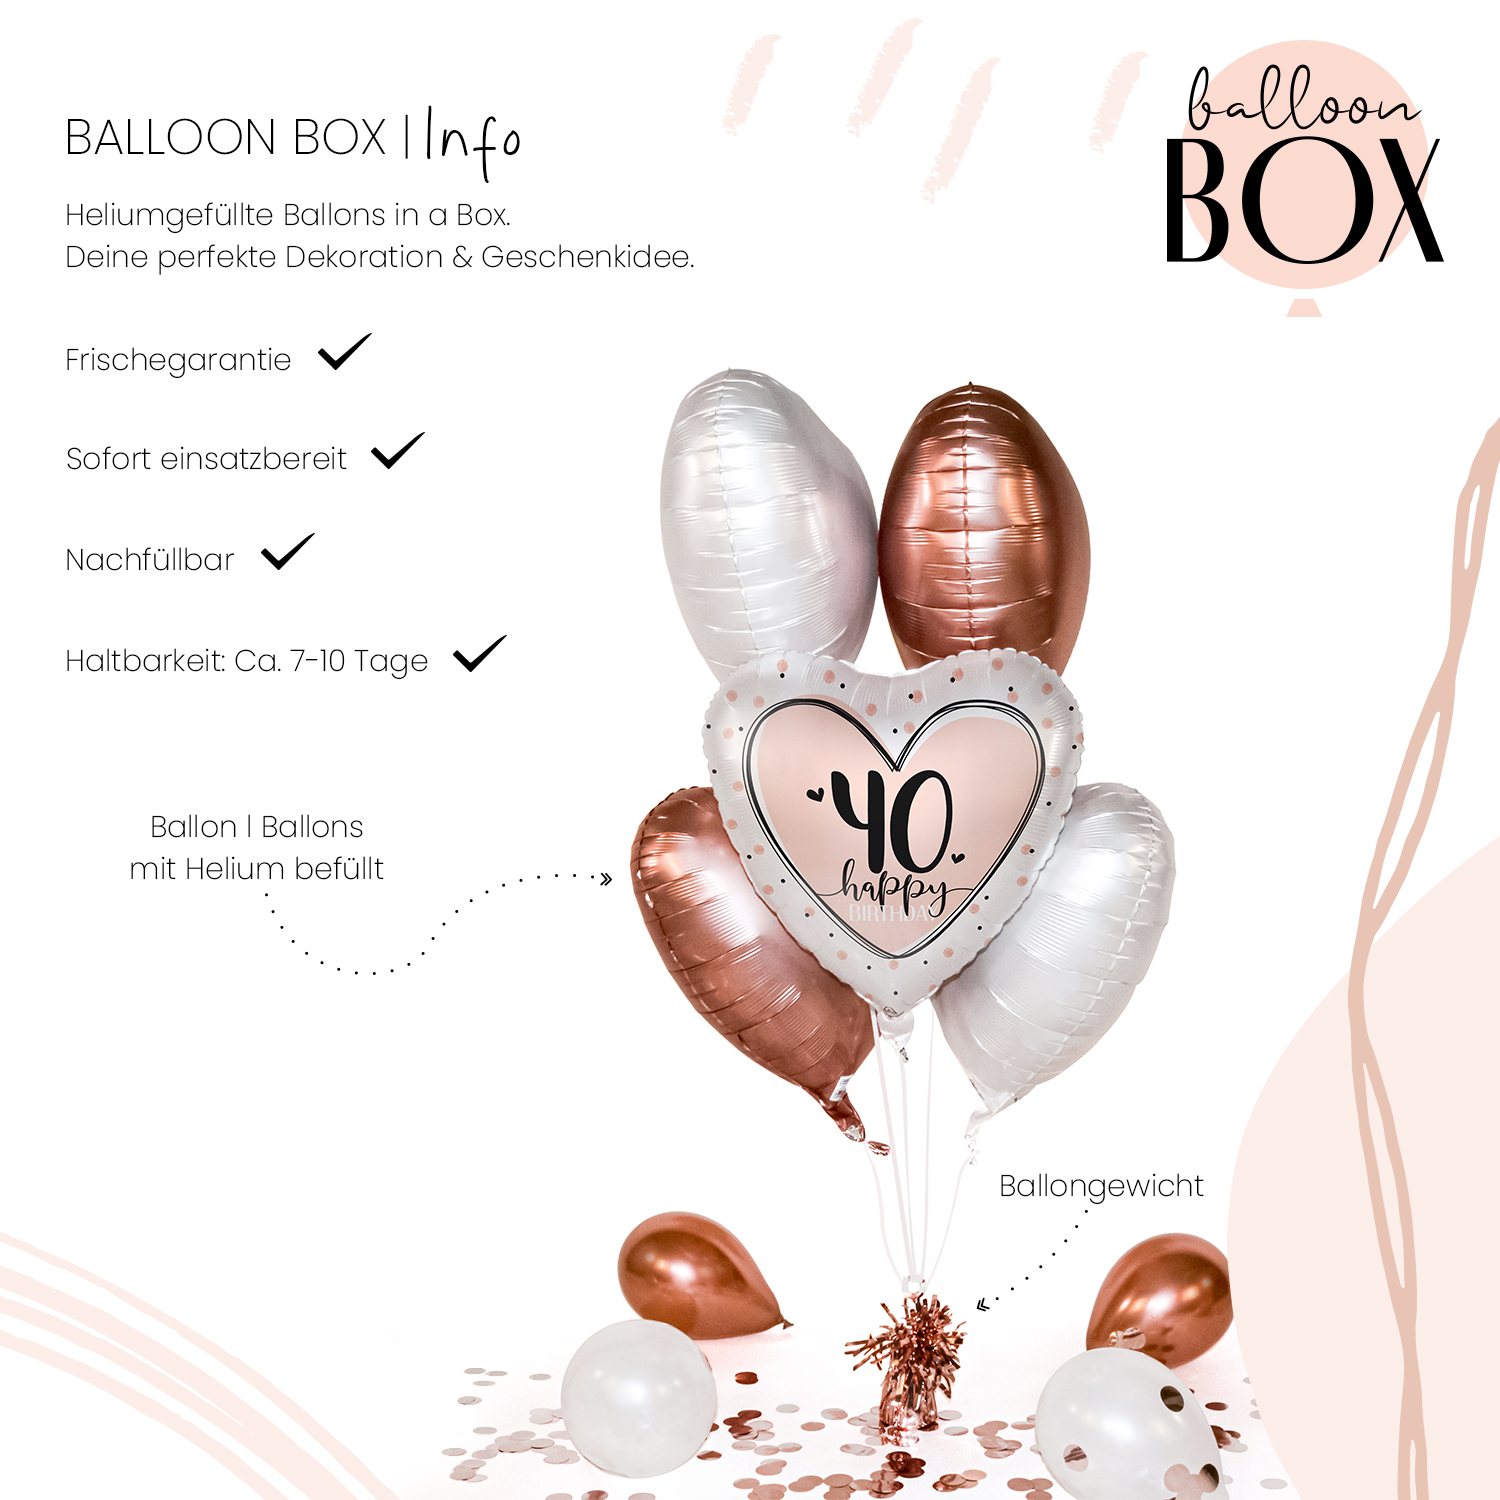 Heliumballon in a Box - Glossy Birthday 40